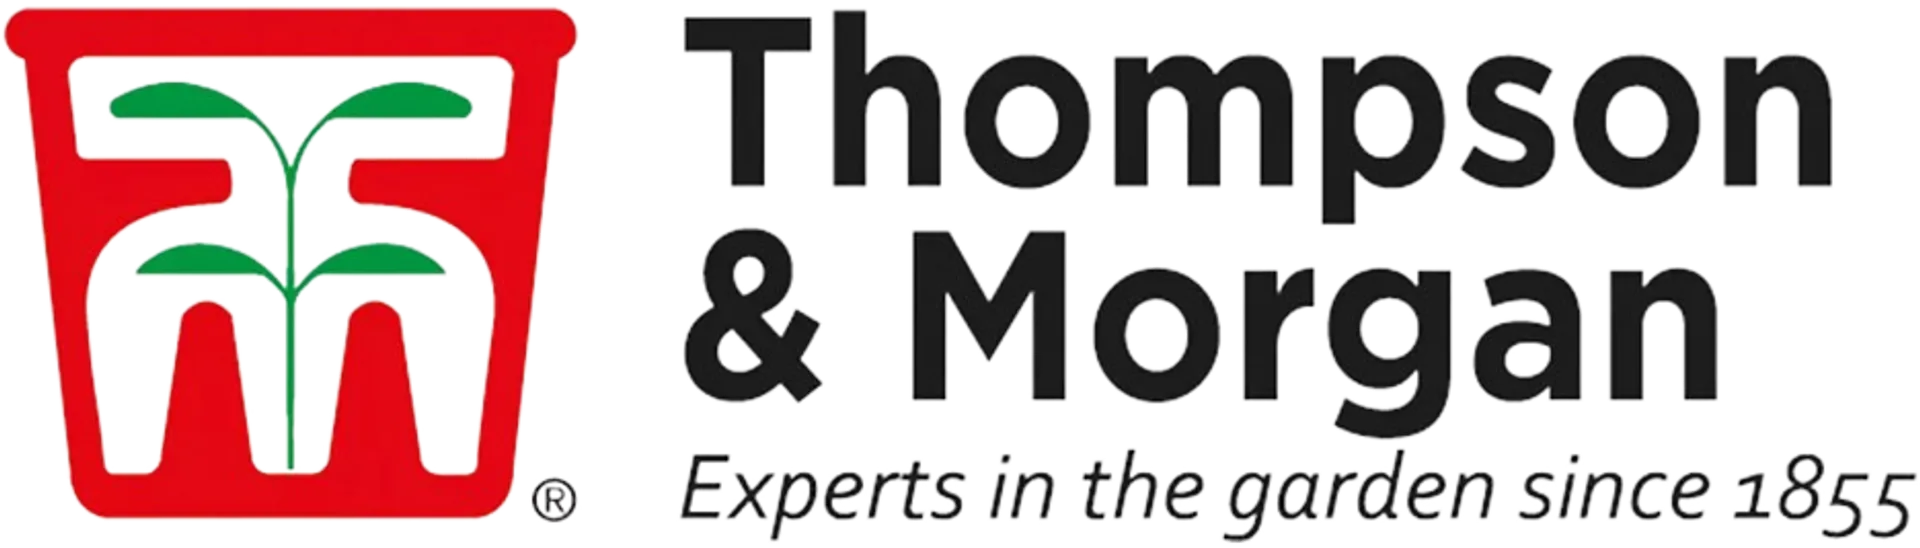 THOMPSON & MORGAN logo. Current catalogue